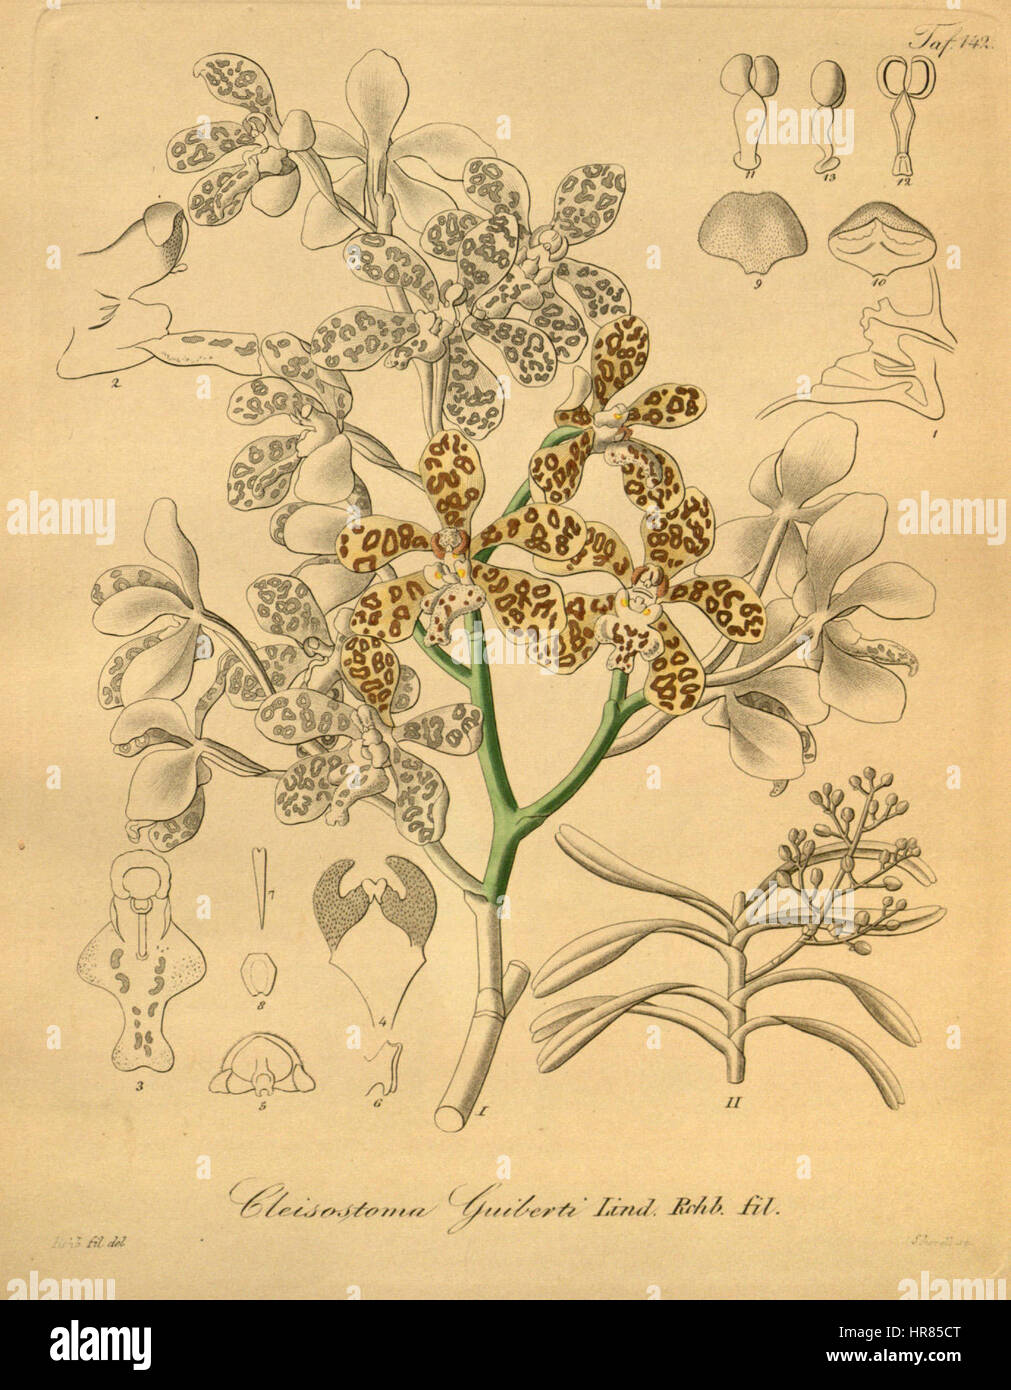 Staurochilus guibertii (as Cleisostoma guibertii) - Xenia 2 pl 142 Stock Photo